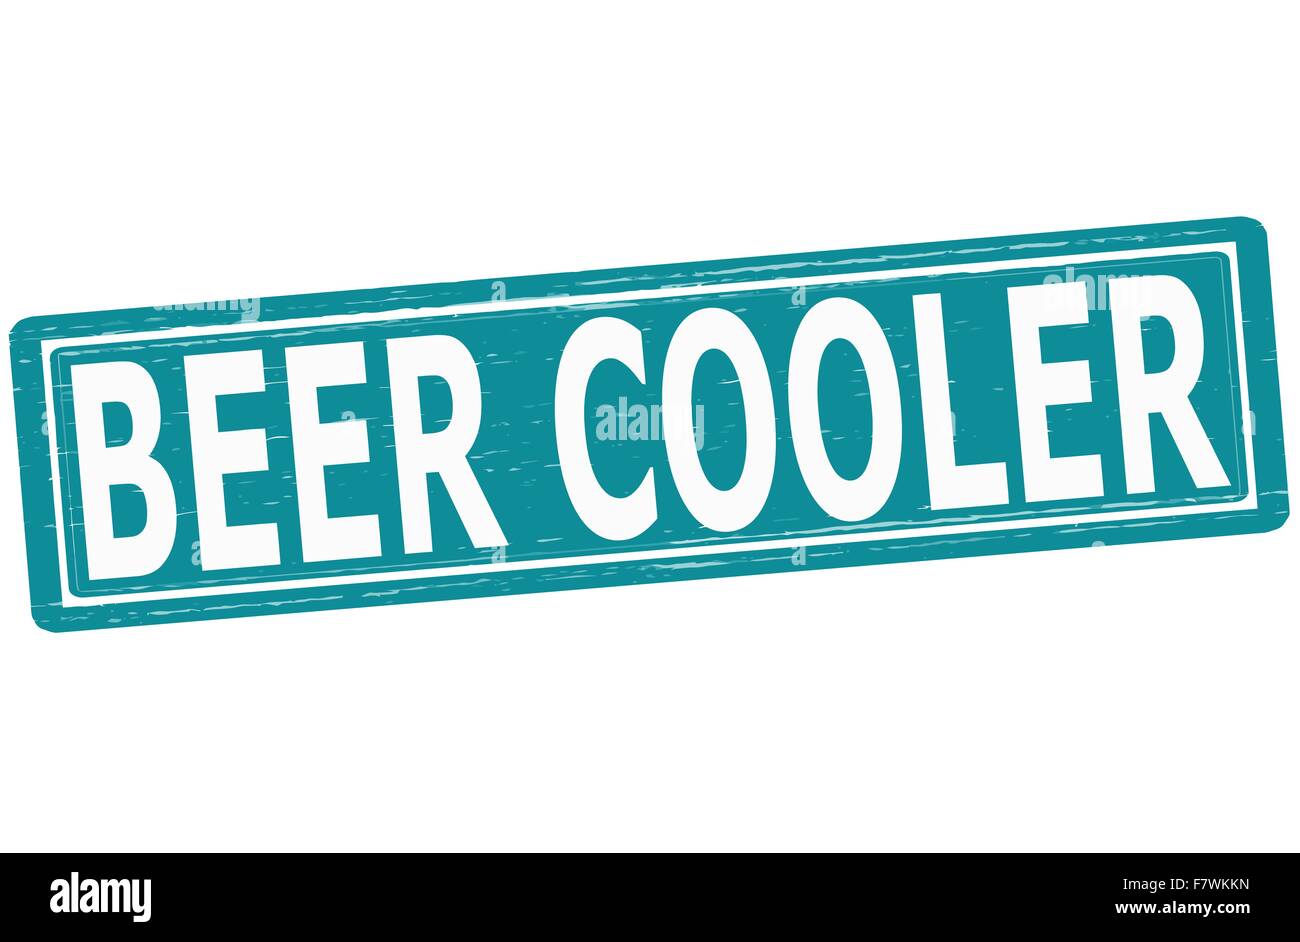 Beer cooler Stock Vector